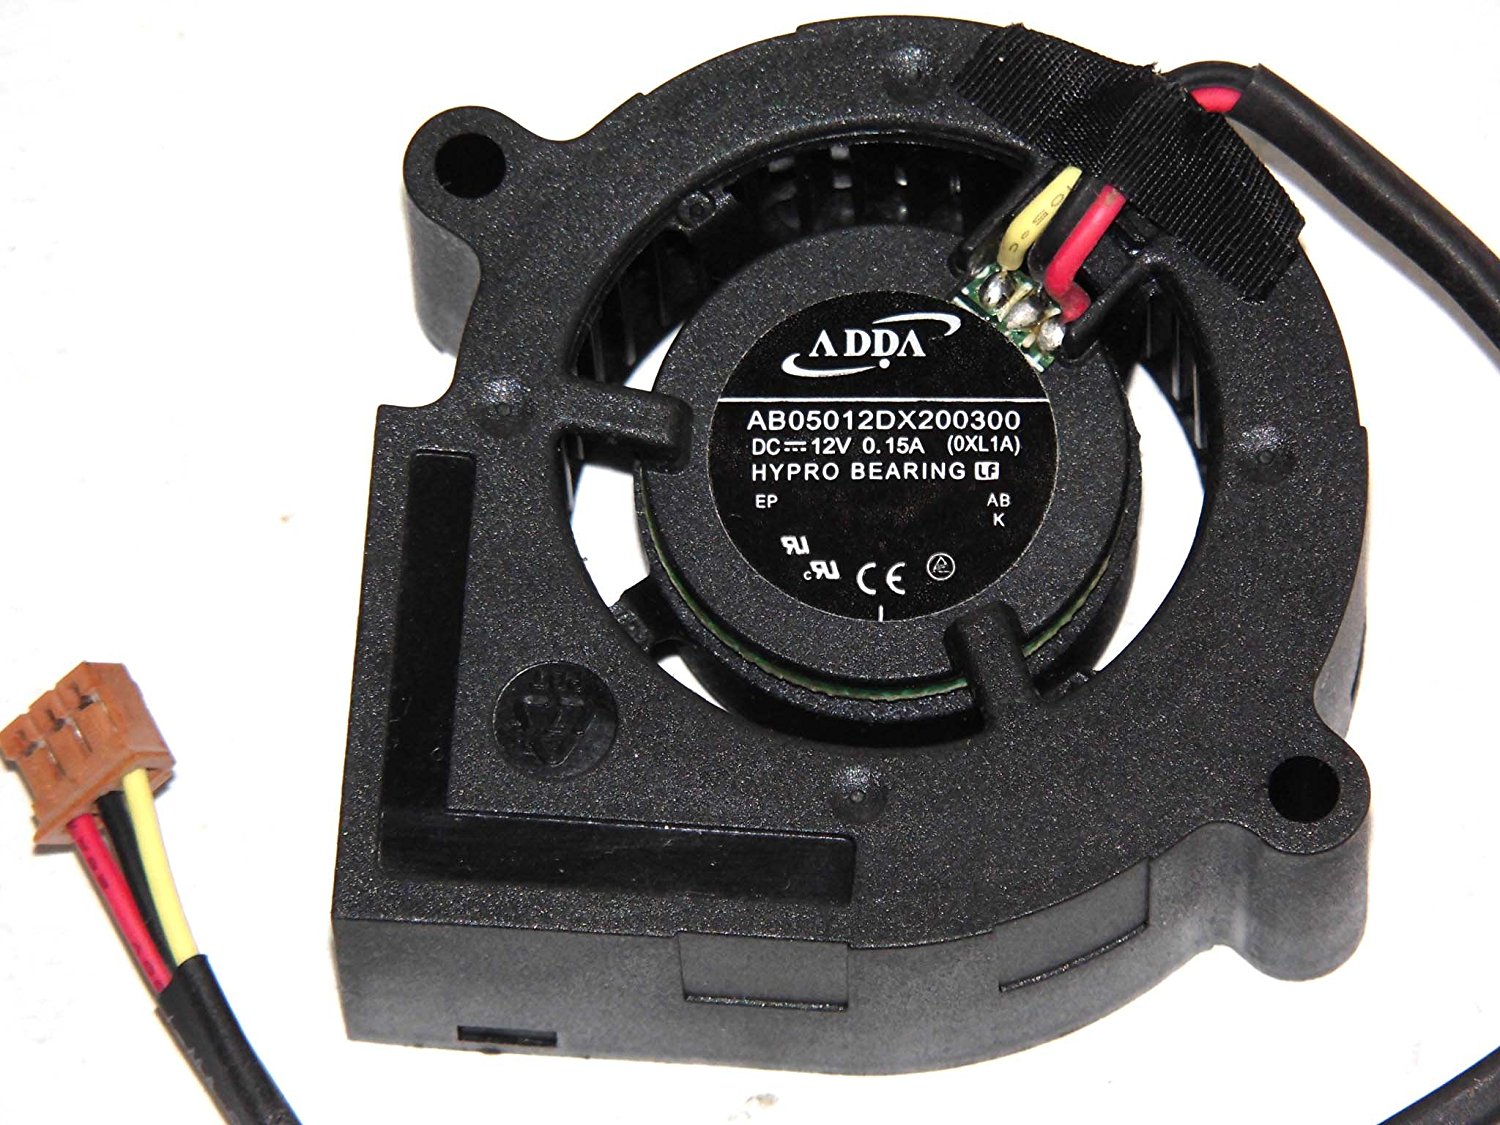 Ventilador de refrigeración AB05012DX200300 ADDA adecuado para proyector de 12V 0,15A